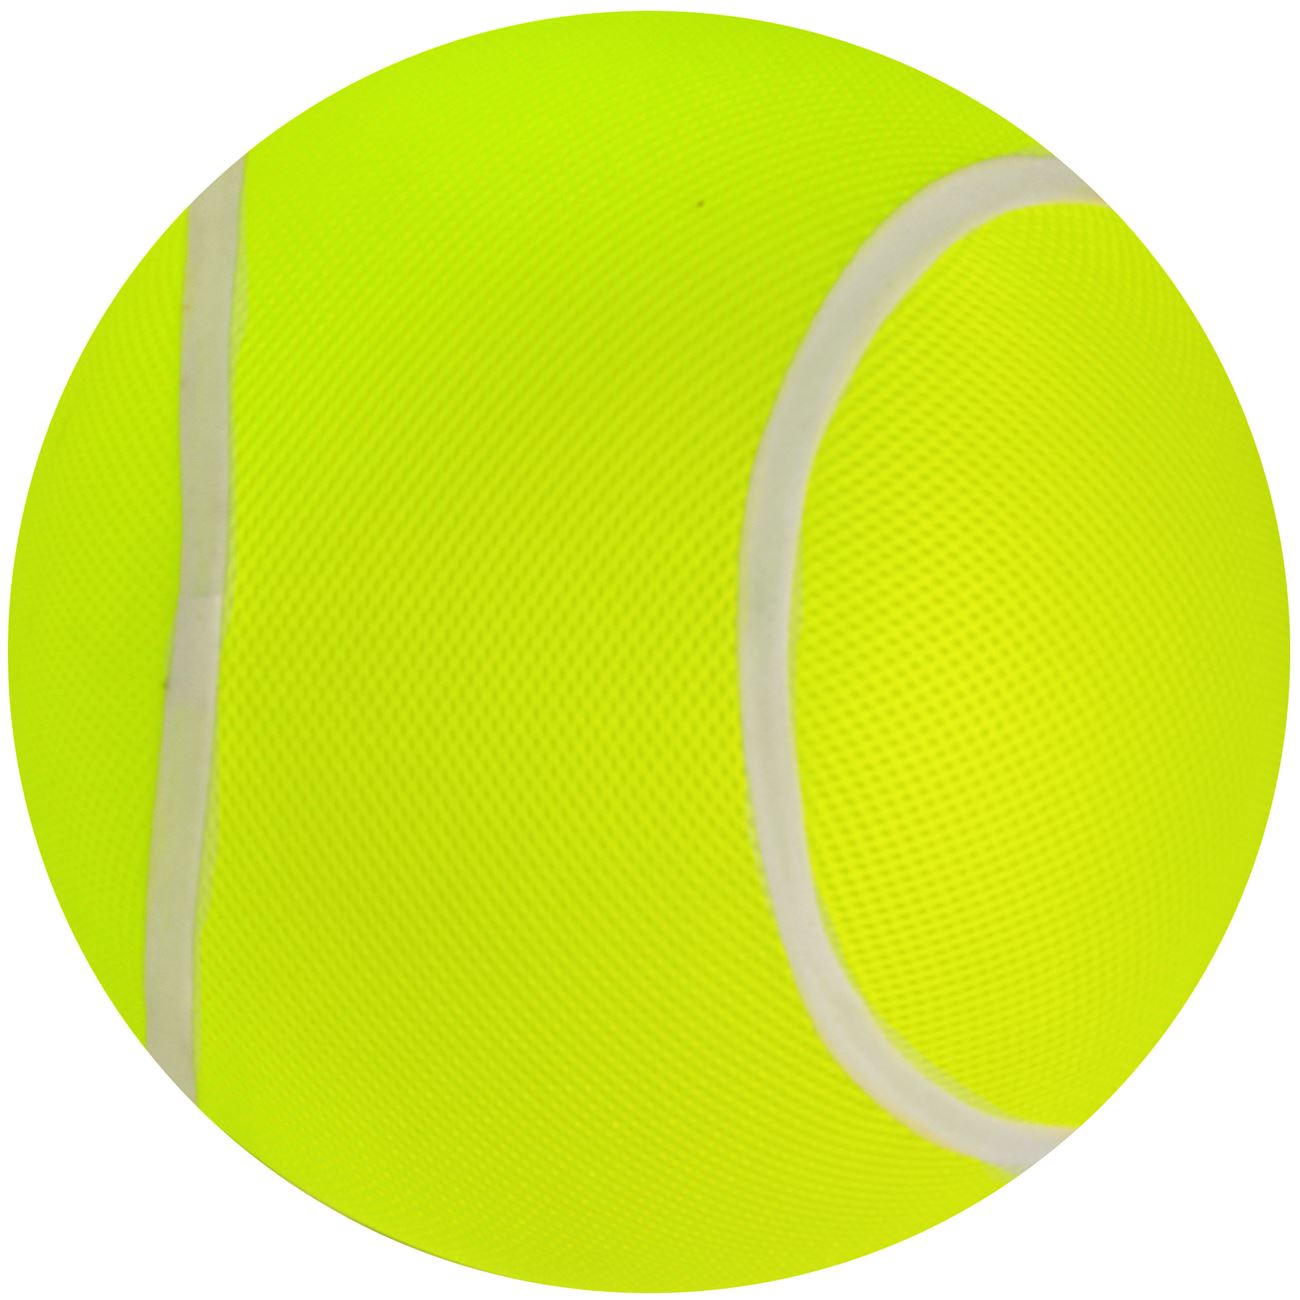 Tennis labda formájú gumilabda 35 cm